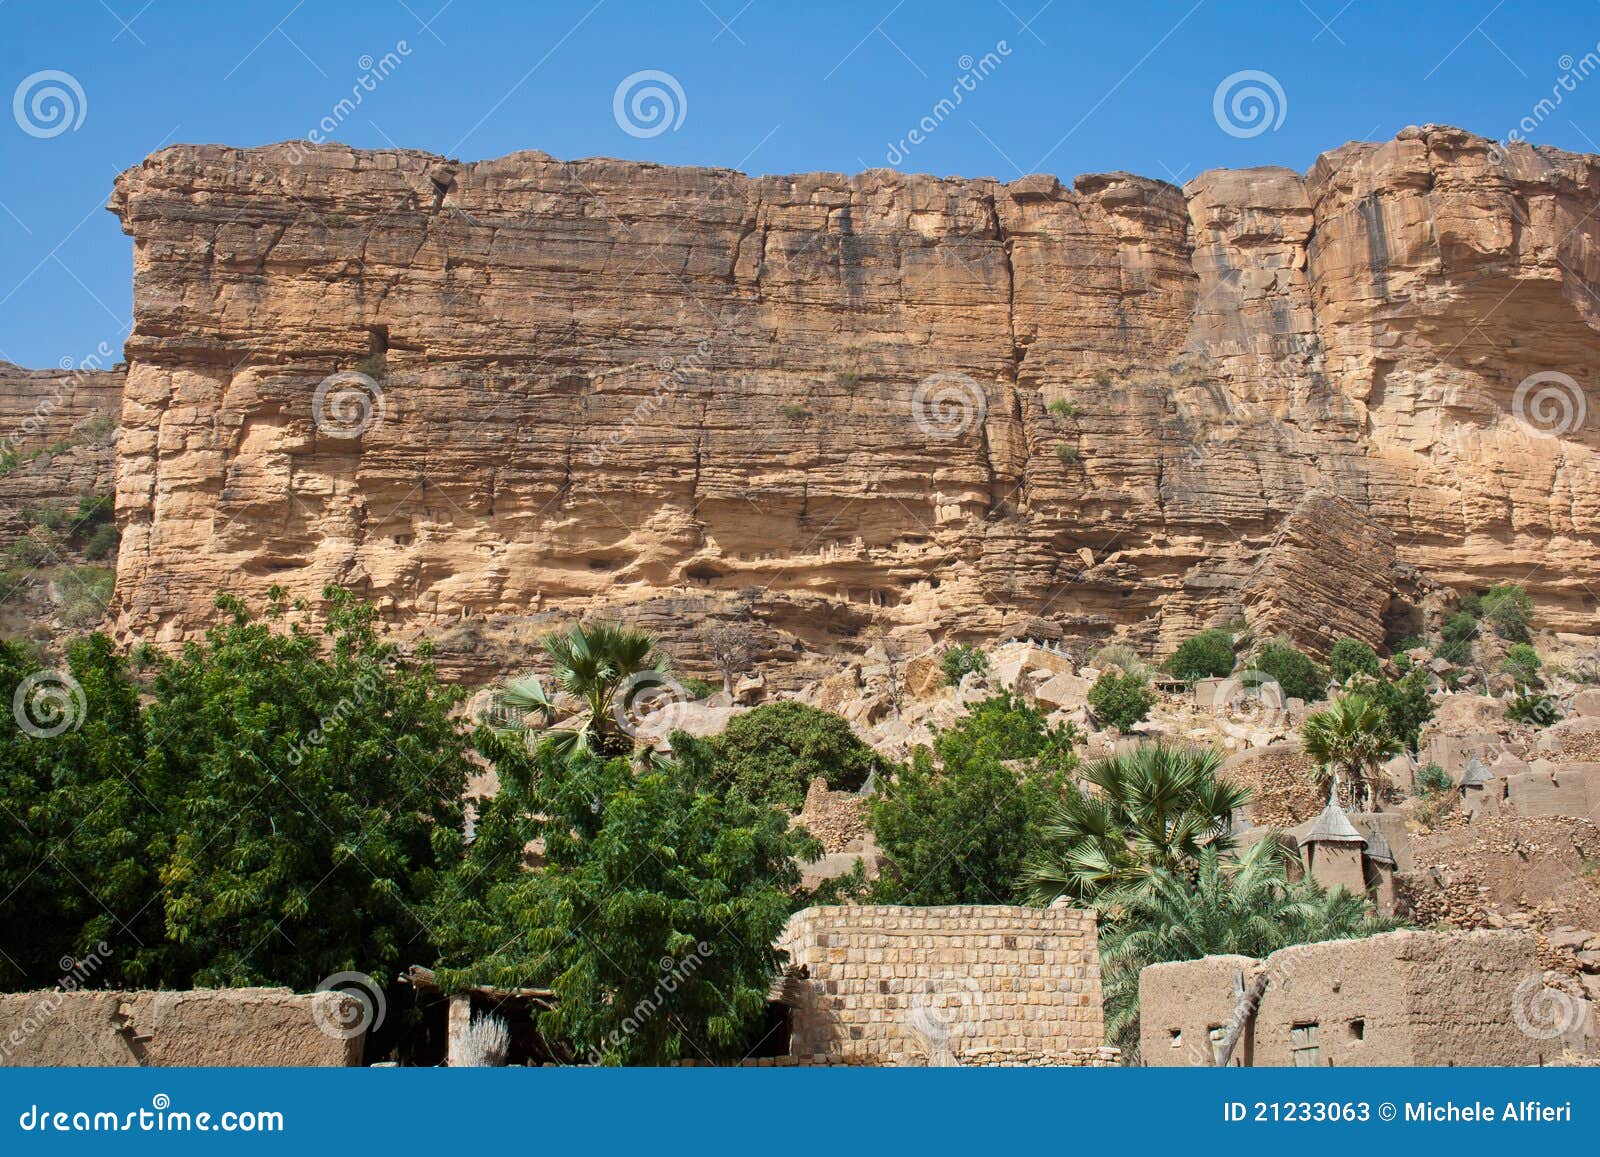 the bandiagara escarpment, mali (africa).